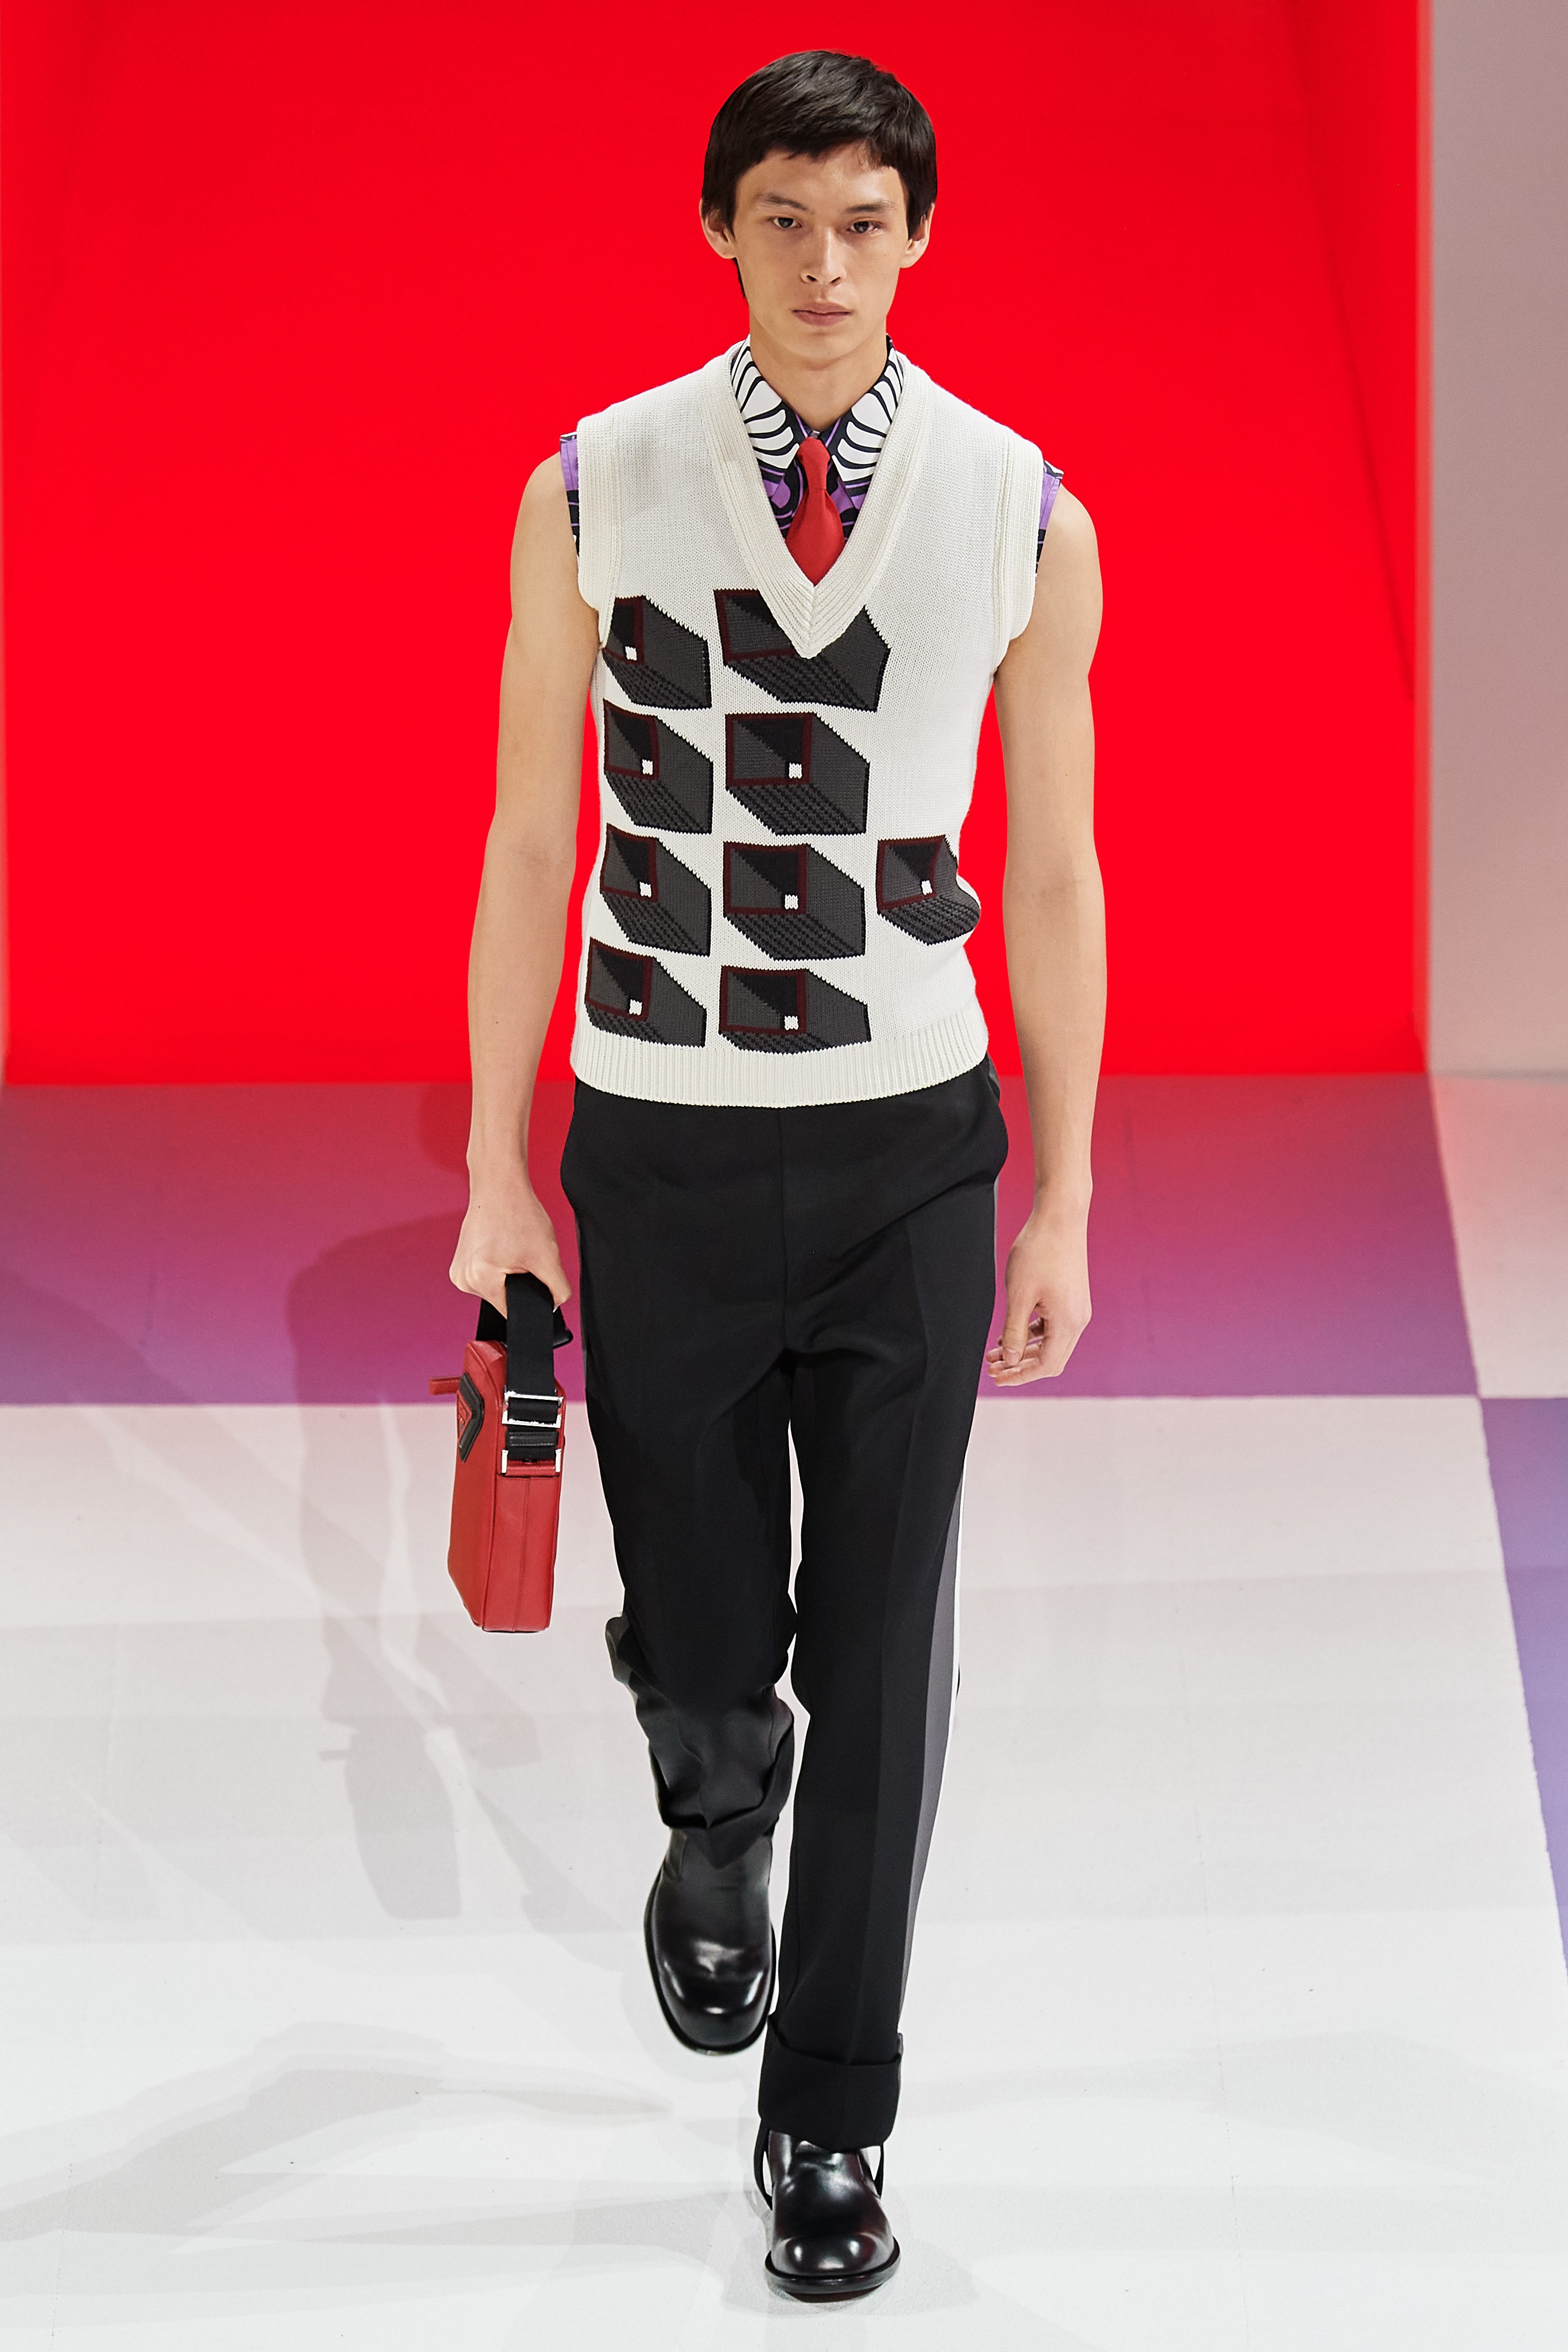 2020巴黎时装周-Louis Vuitton春夏时装发布秀看点之四 [12P]|展会惊艳 - 武当休闲山庄 - 稳定,和谐,人性化的中文社区